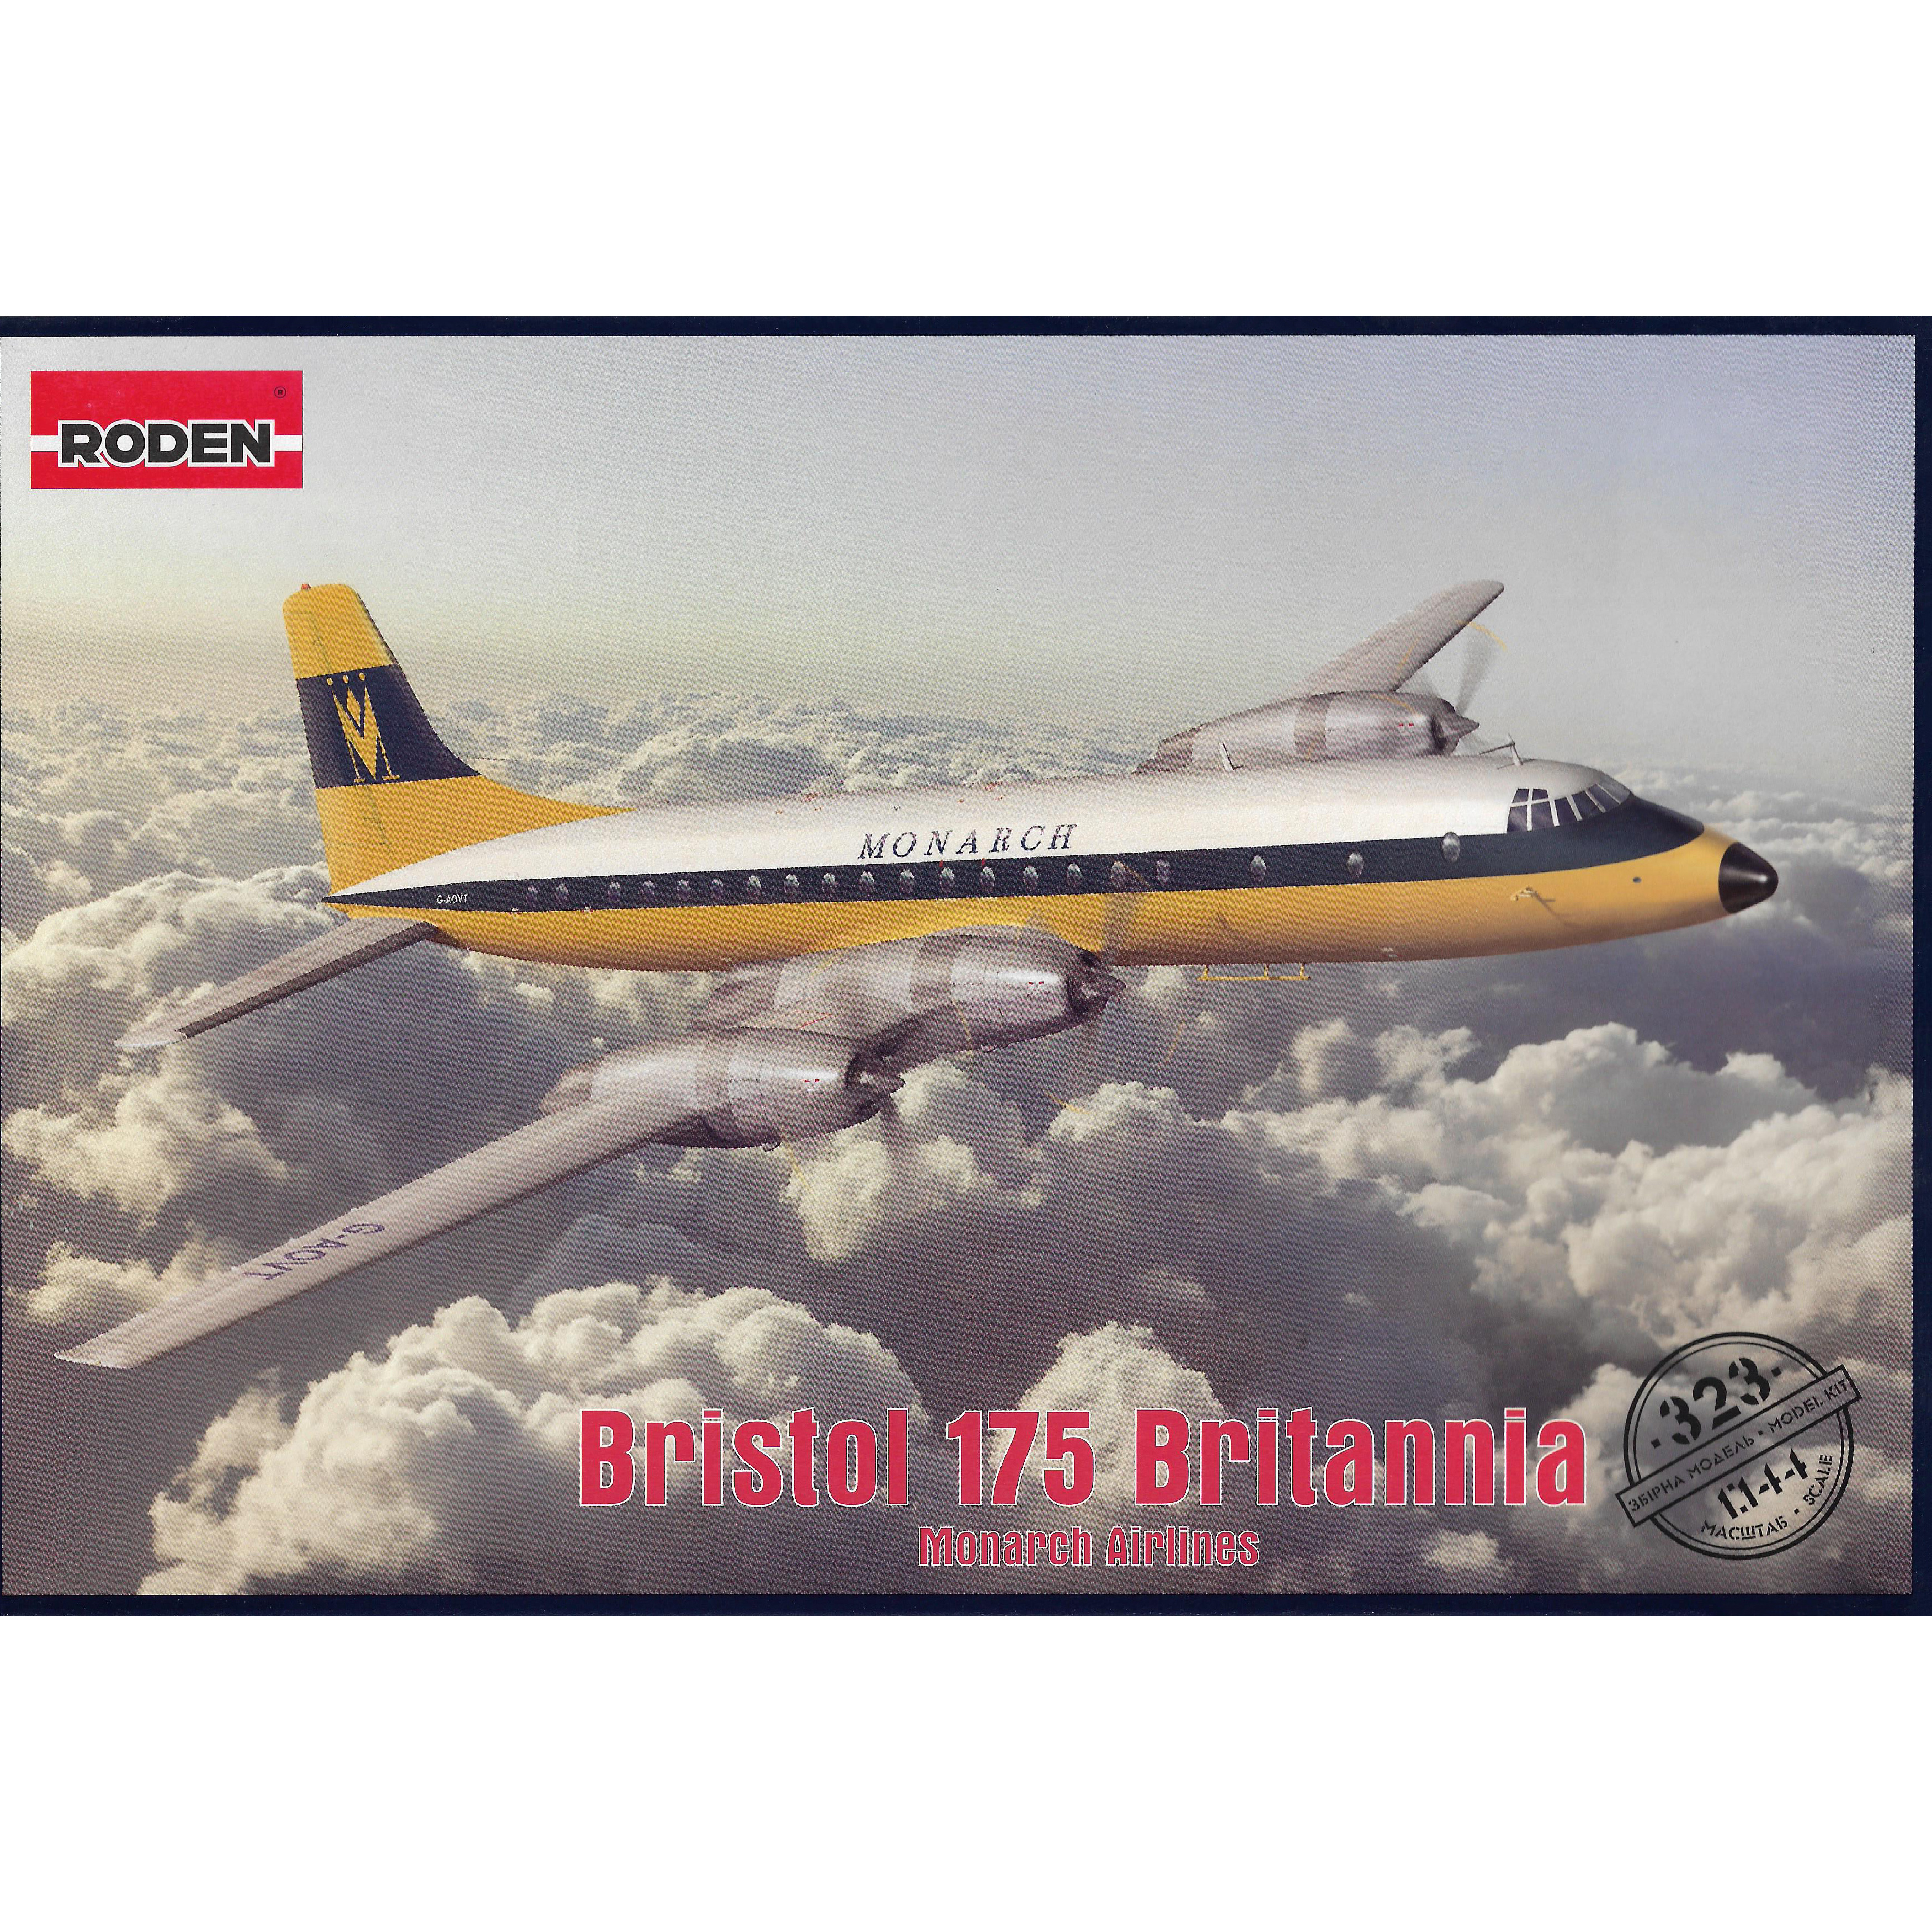 323 Roden 1/144 Bristol 175 Britannia (Monarch Airlines)